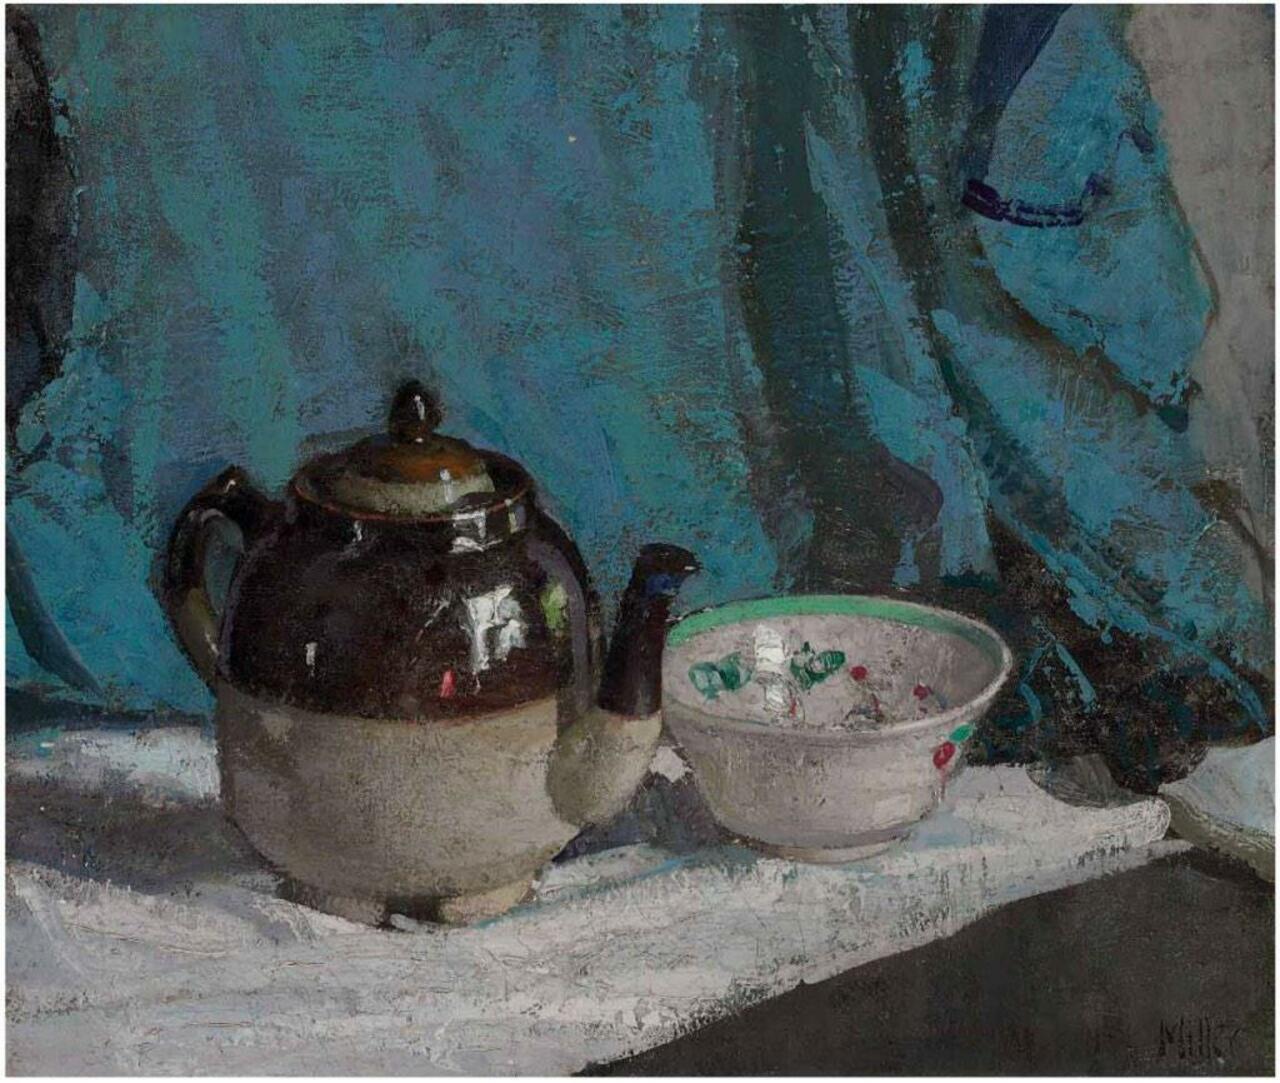 “@geminicat7: 'Teapot and Bowl'
Richard Edward Miller (1875-1943) #art http://t.co/zpPvNh8Nlt”